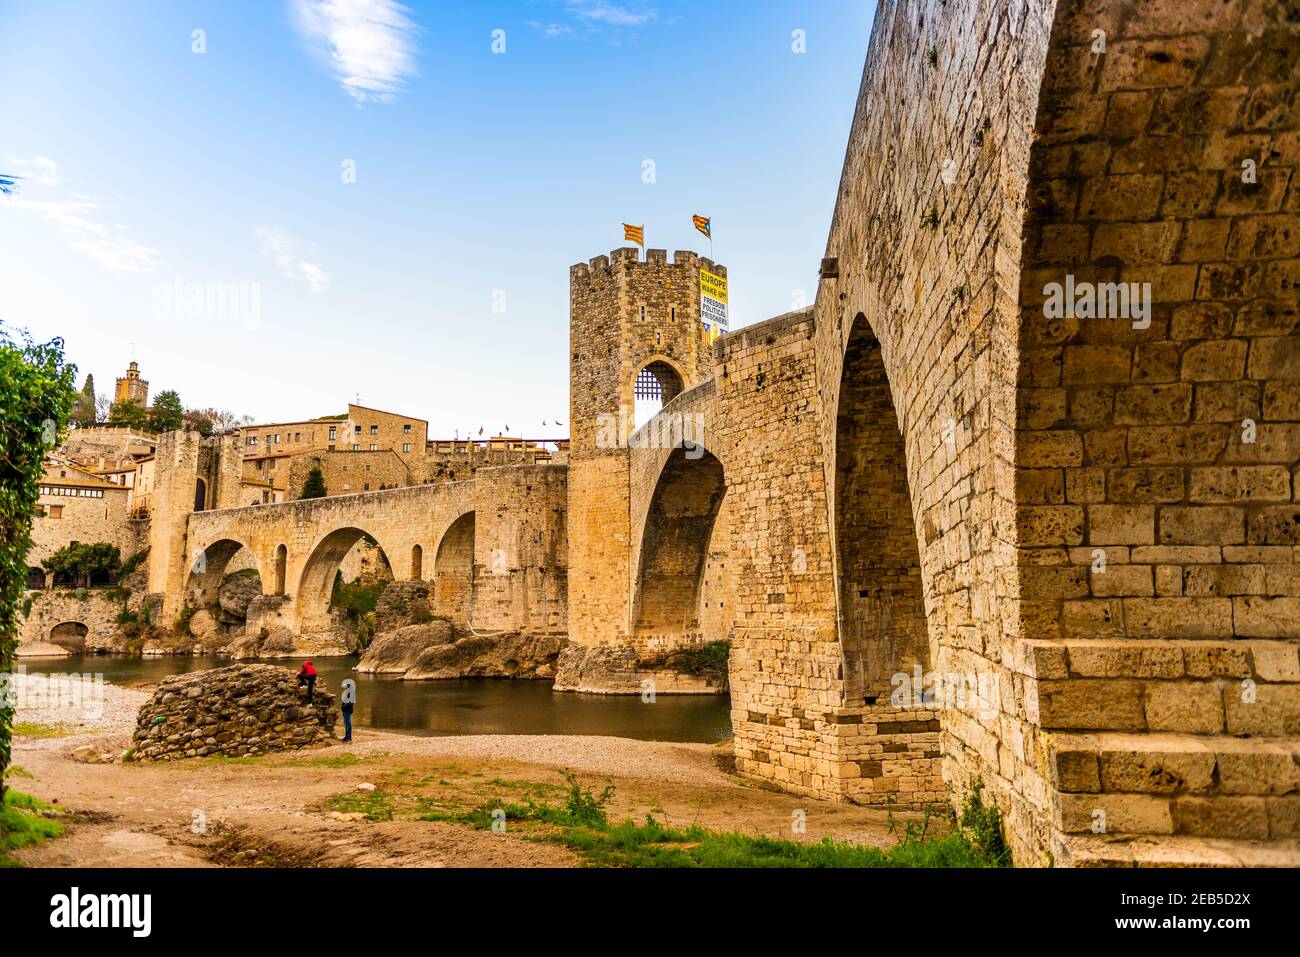 Medieval fortified bridge of Besalu in Catalonia, Spain Stock Photo